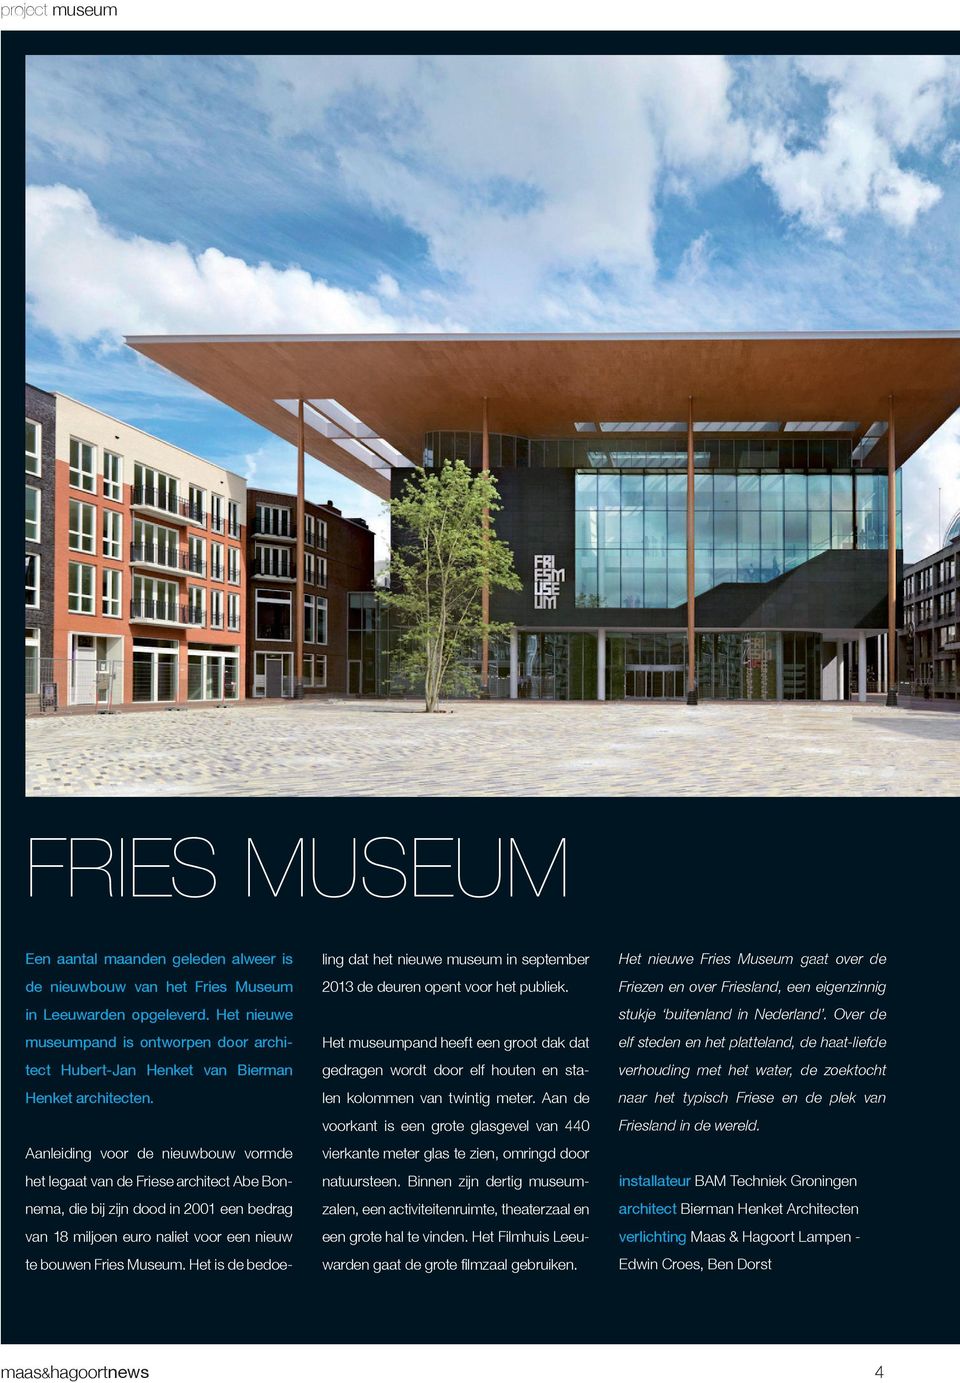 Aanleiding voor de nieuwbouw vormde het legaat van de Friese architect Abe Bonnema, die bij zijn dood in 2001 een bedrag van 18 miljoen euro naliet voor een nieuw te bouwen Fries Museum.